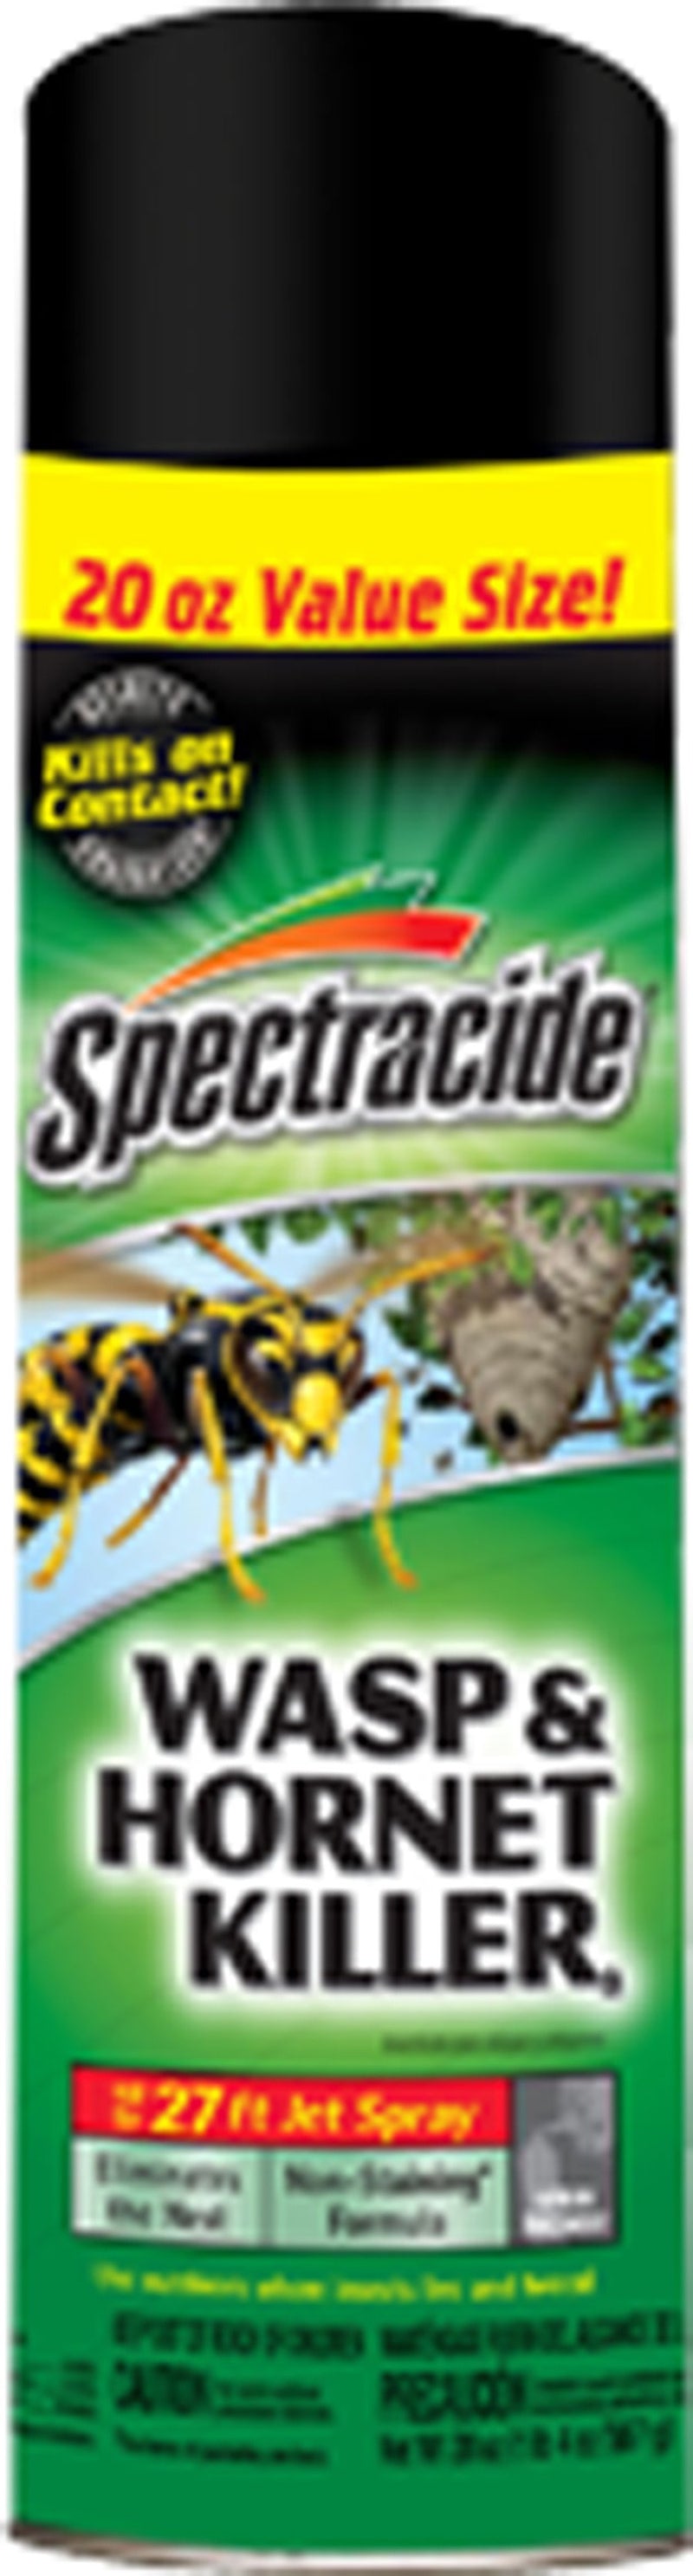 Spectracide Wasp & Hornet Killer 20oz